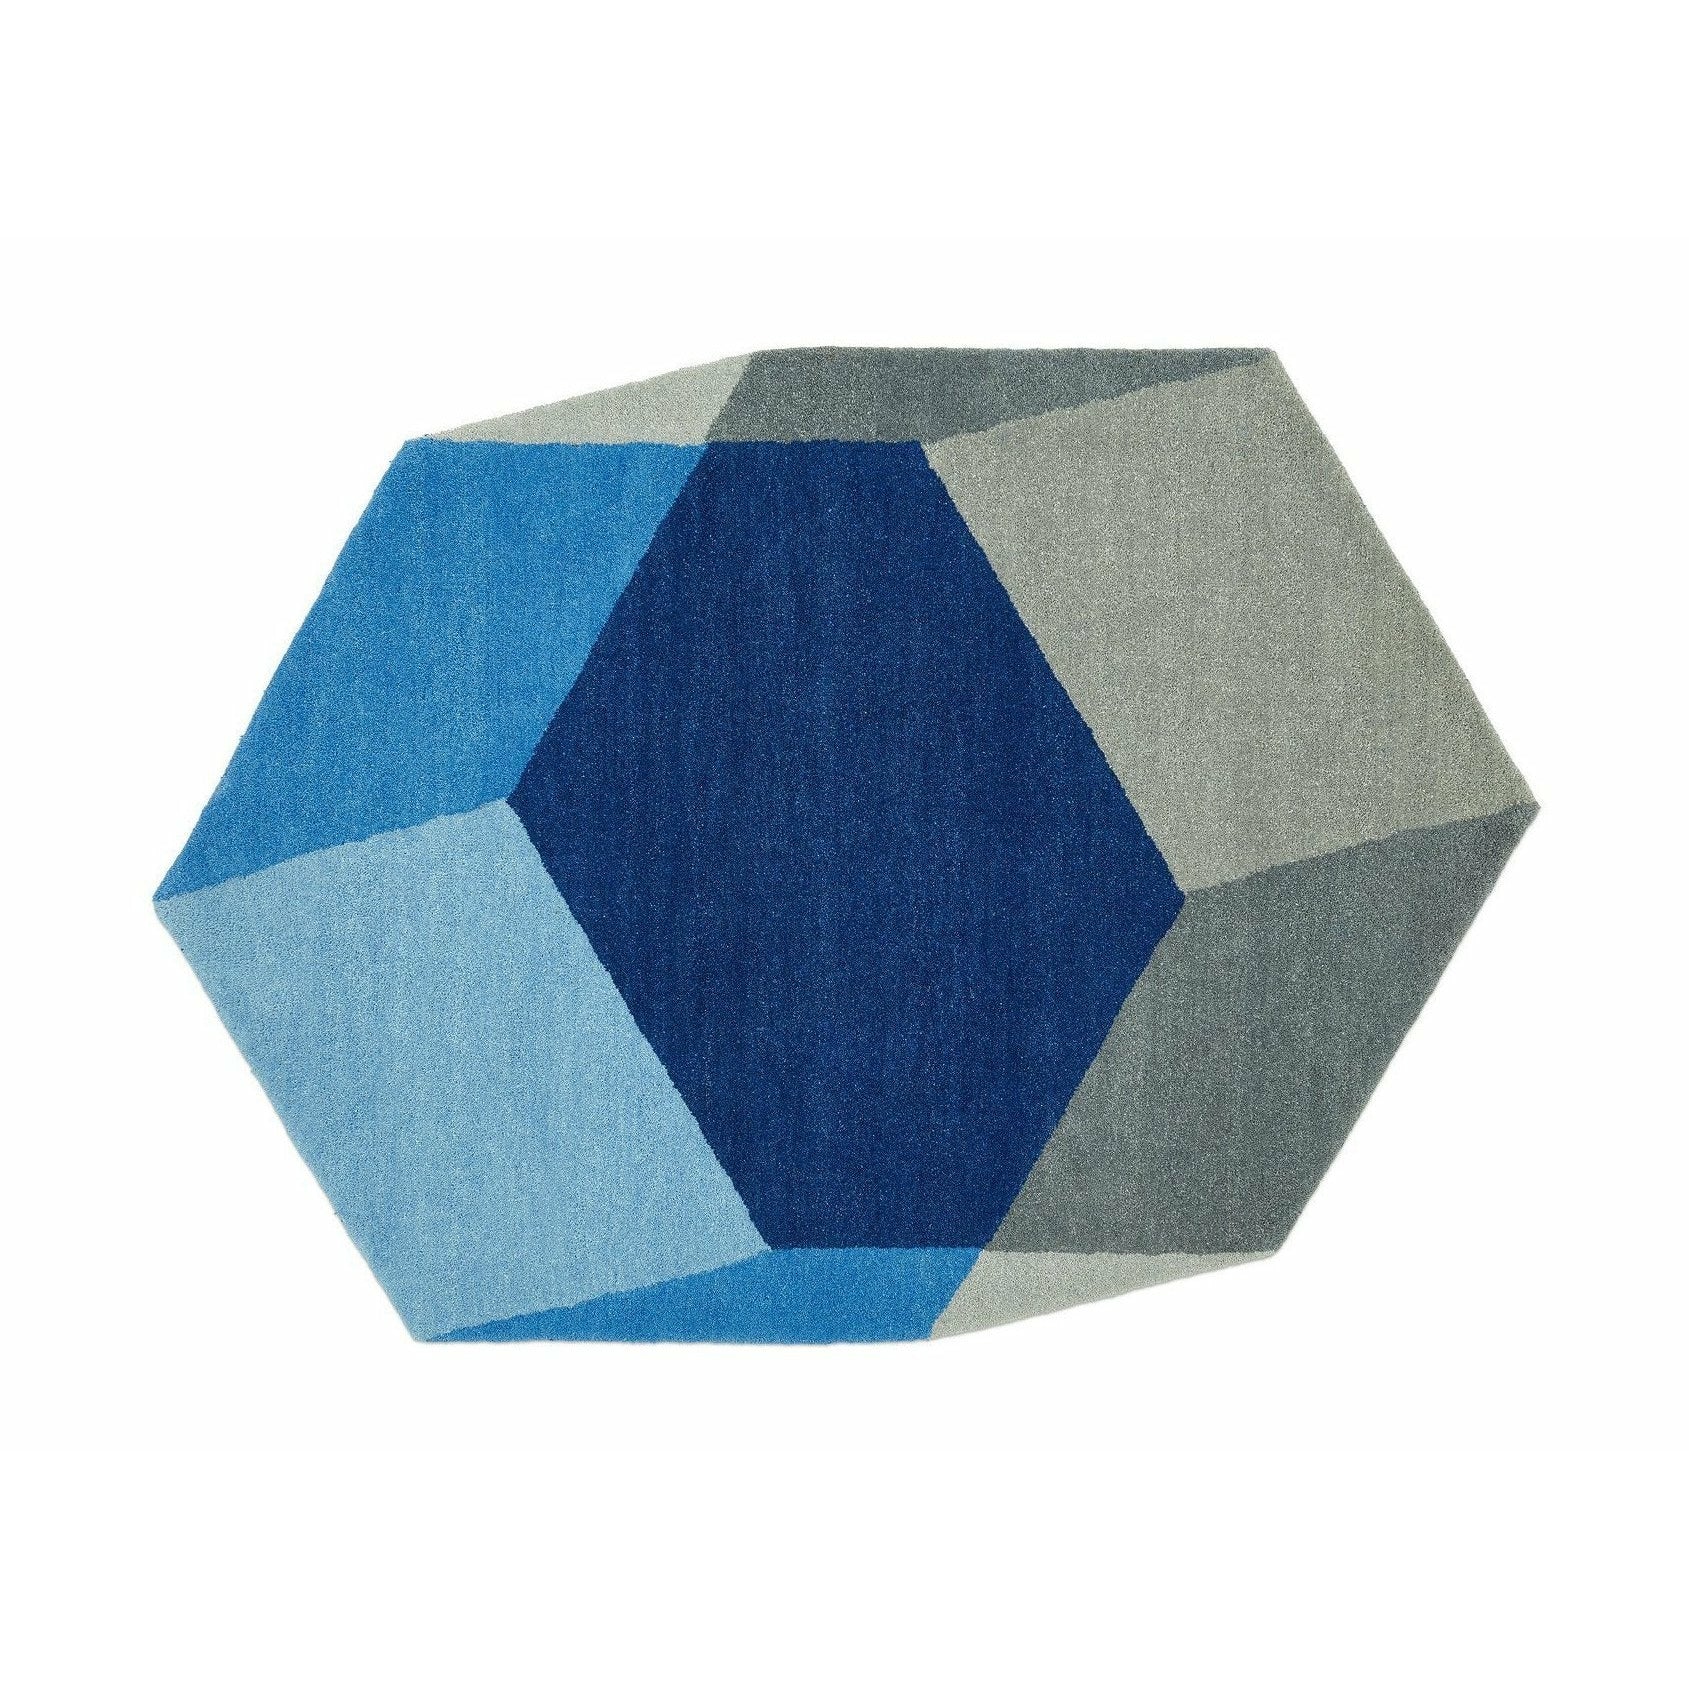 PUIK Iso matta hexagonal, blå